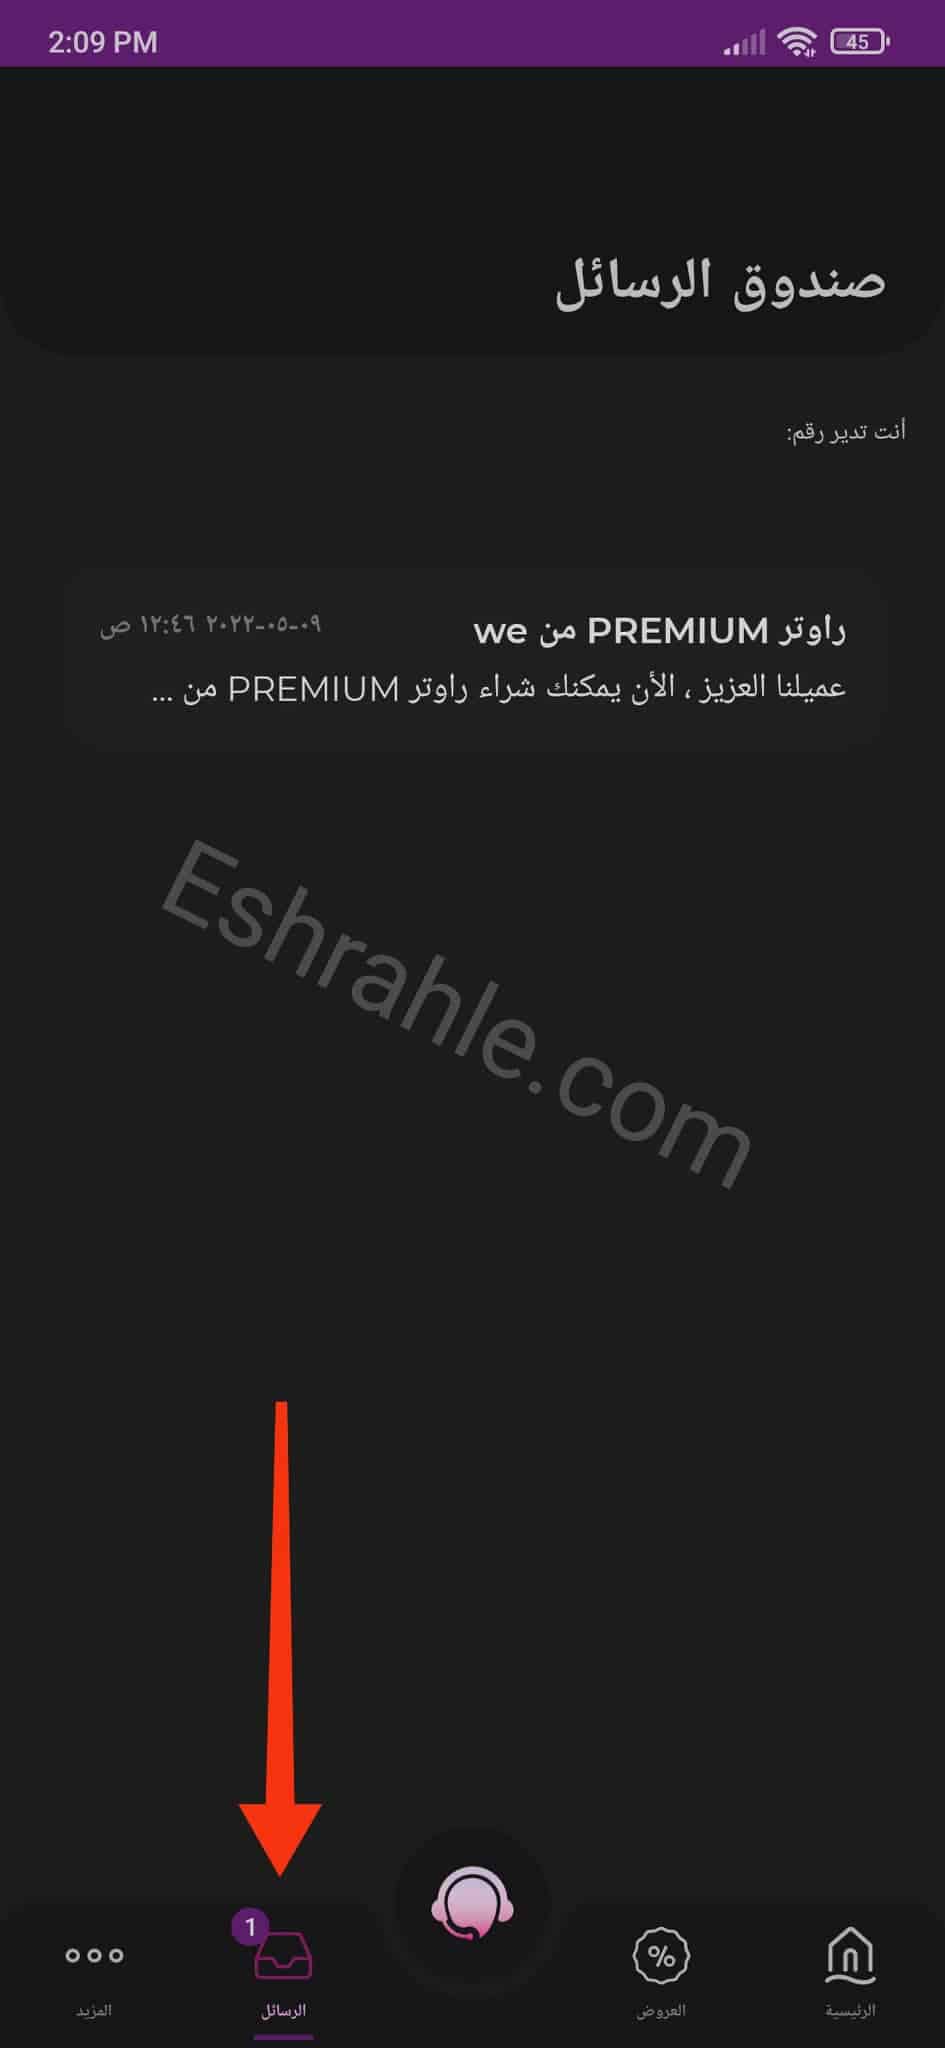 تحميل تطبيق ماي وي my we لادارة خطك - الانترنت الارضي 6